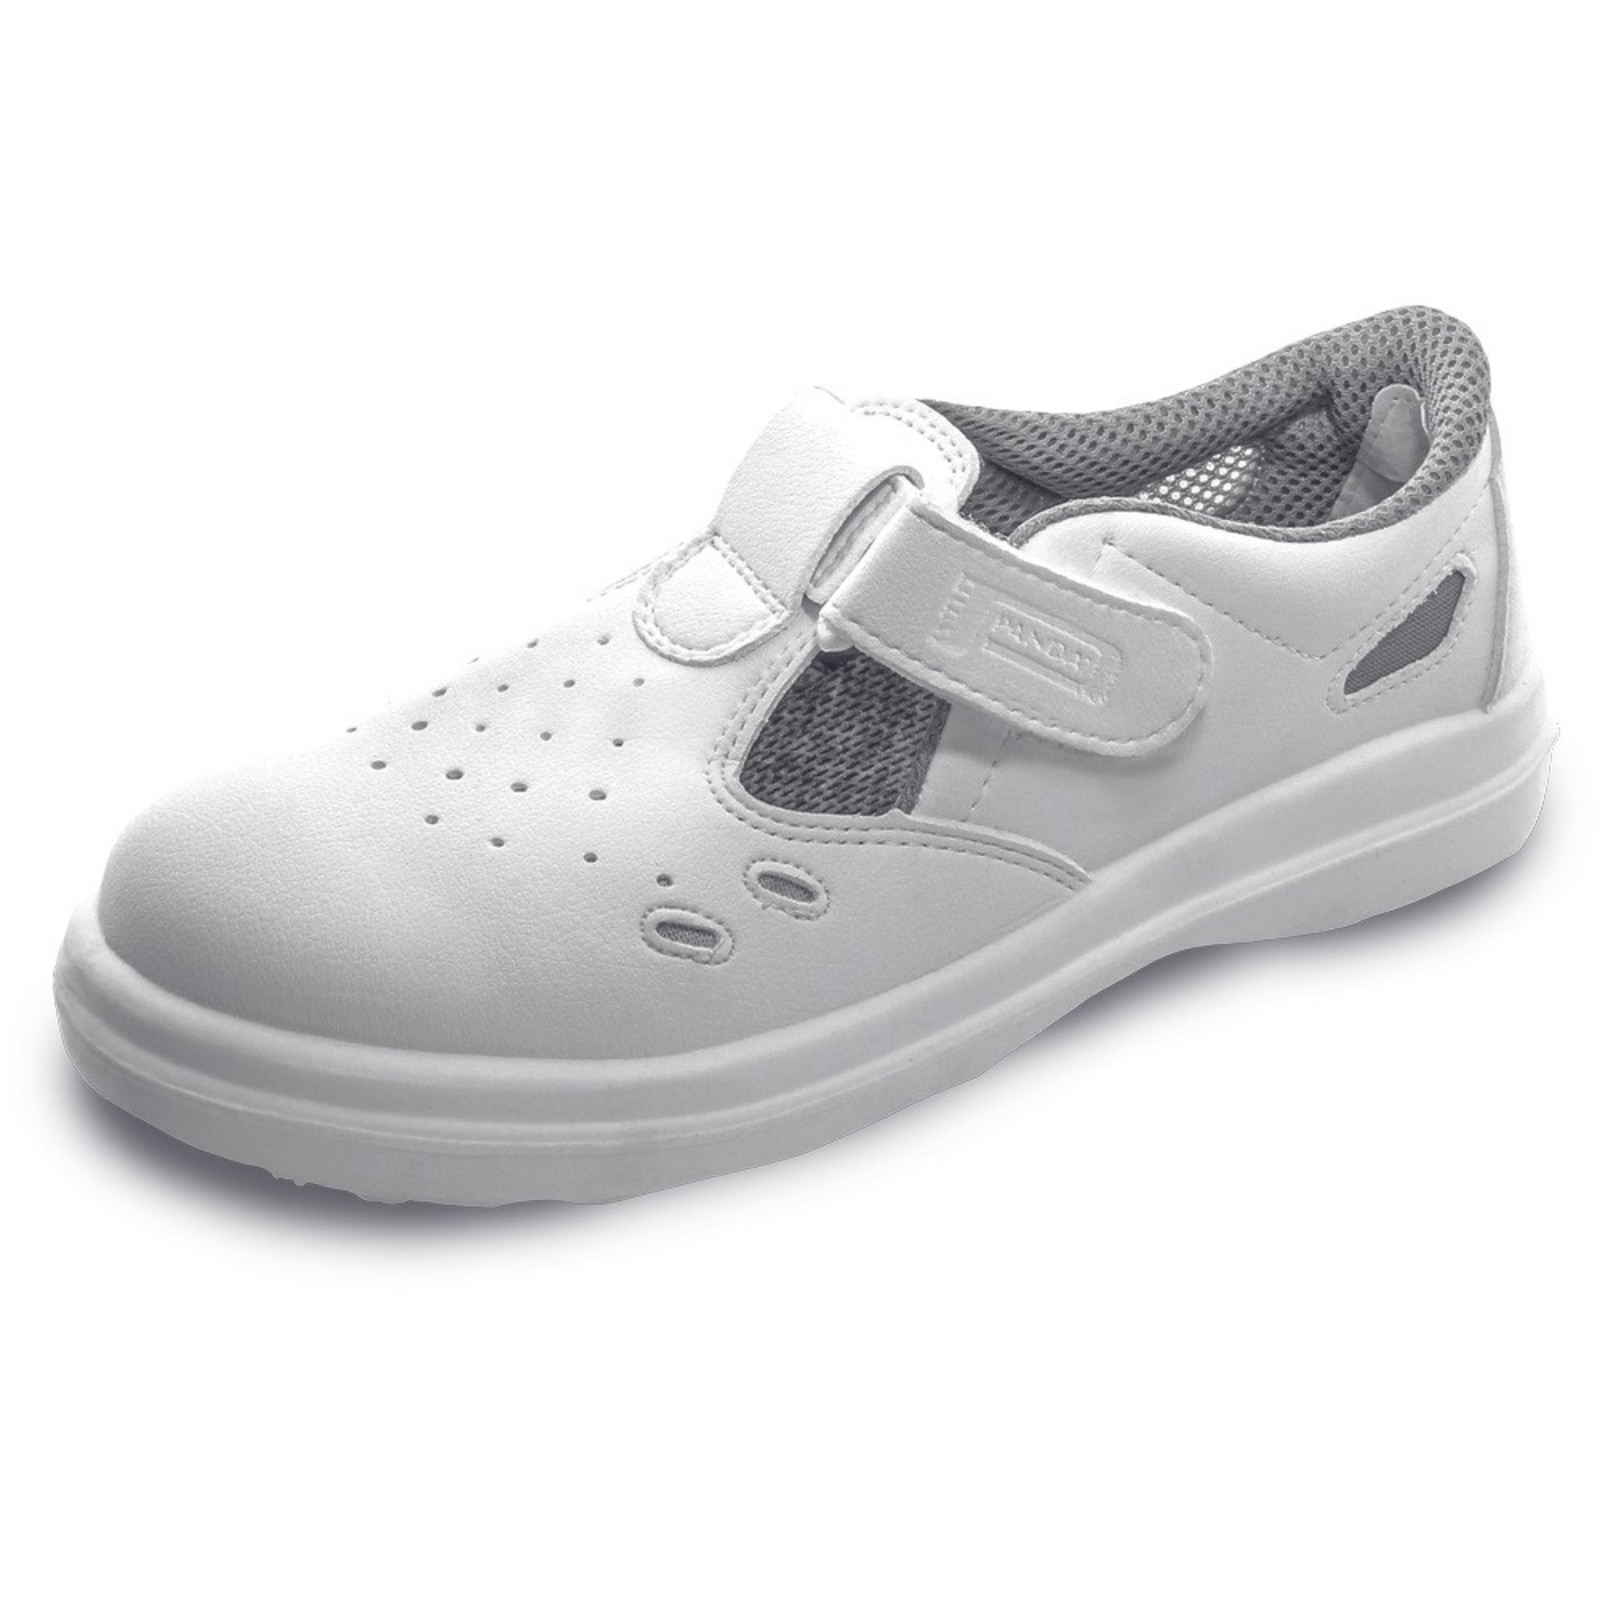 Bezpečnostné sandále Panda Sanitary Lybra S1 SRC - veľkosť: 43, farba: biela